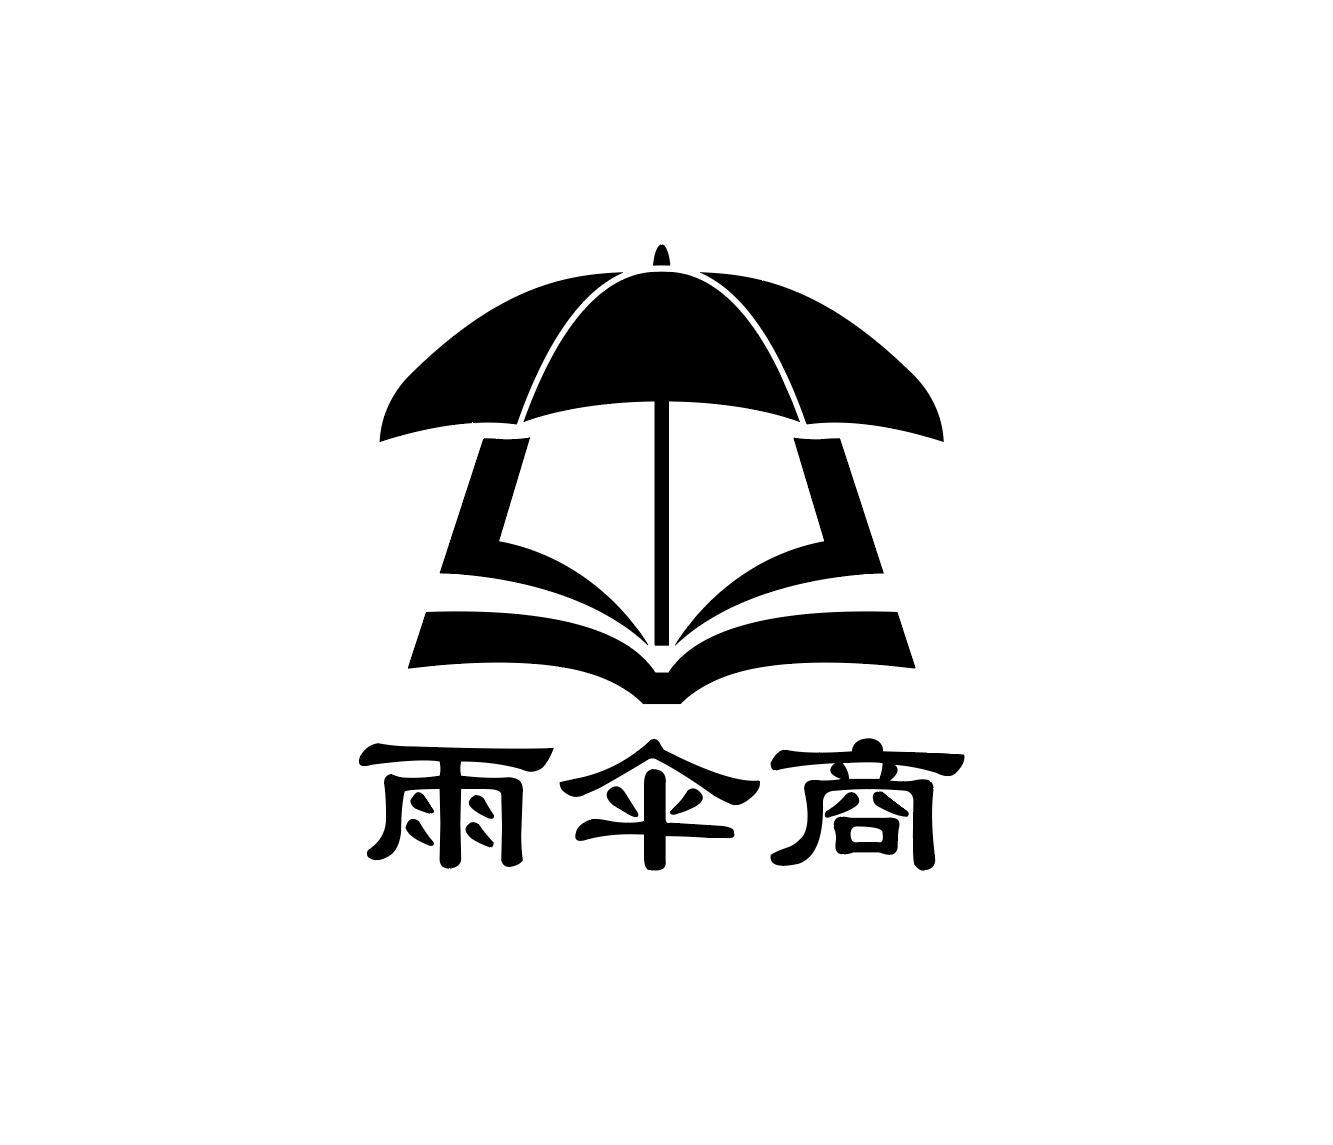 商标文字雨伞商商标注册号 52672260,商标申请人山东尚宏东之美华健康